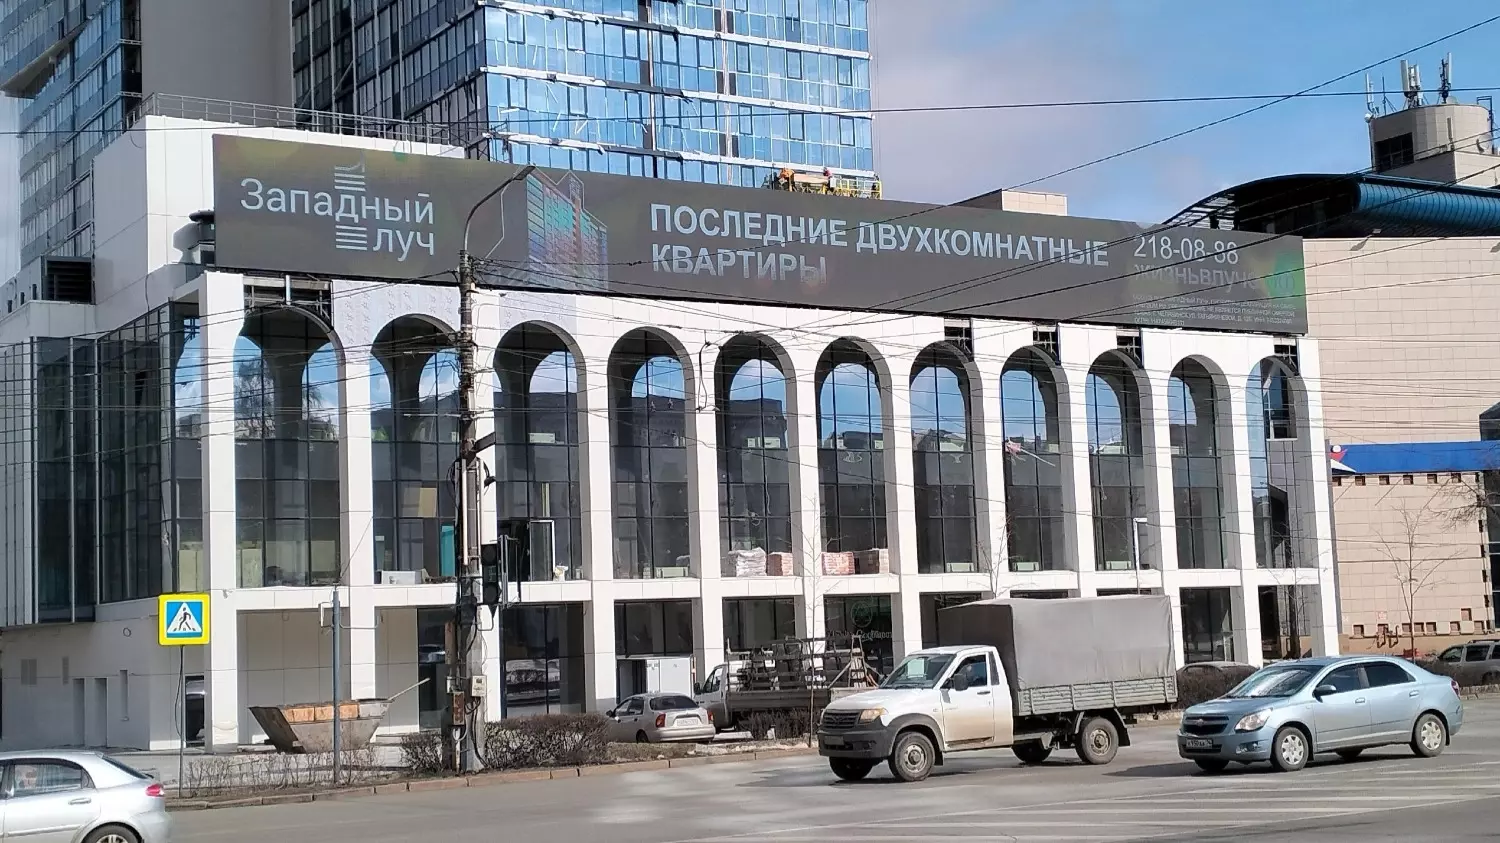 Реклама снова появилась в центре Челябинска